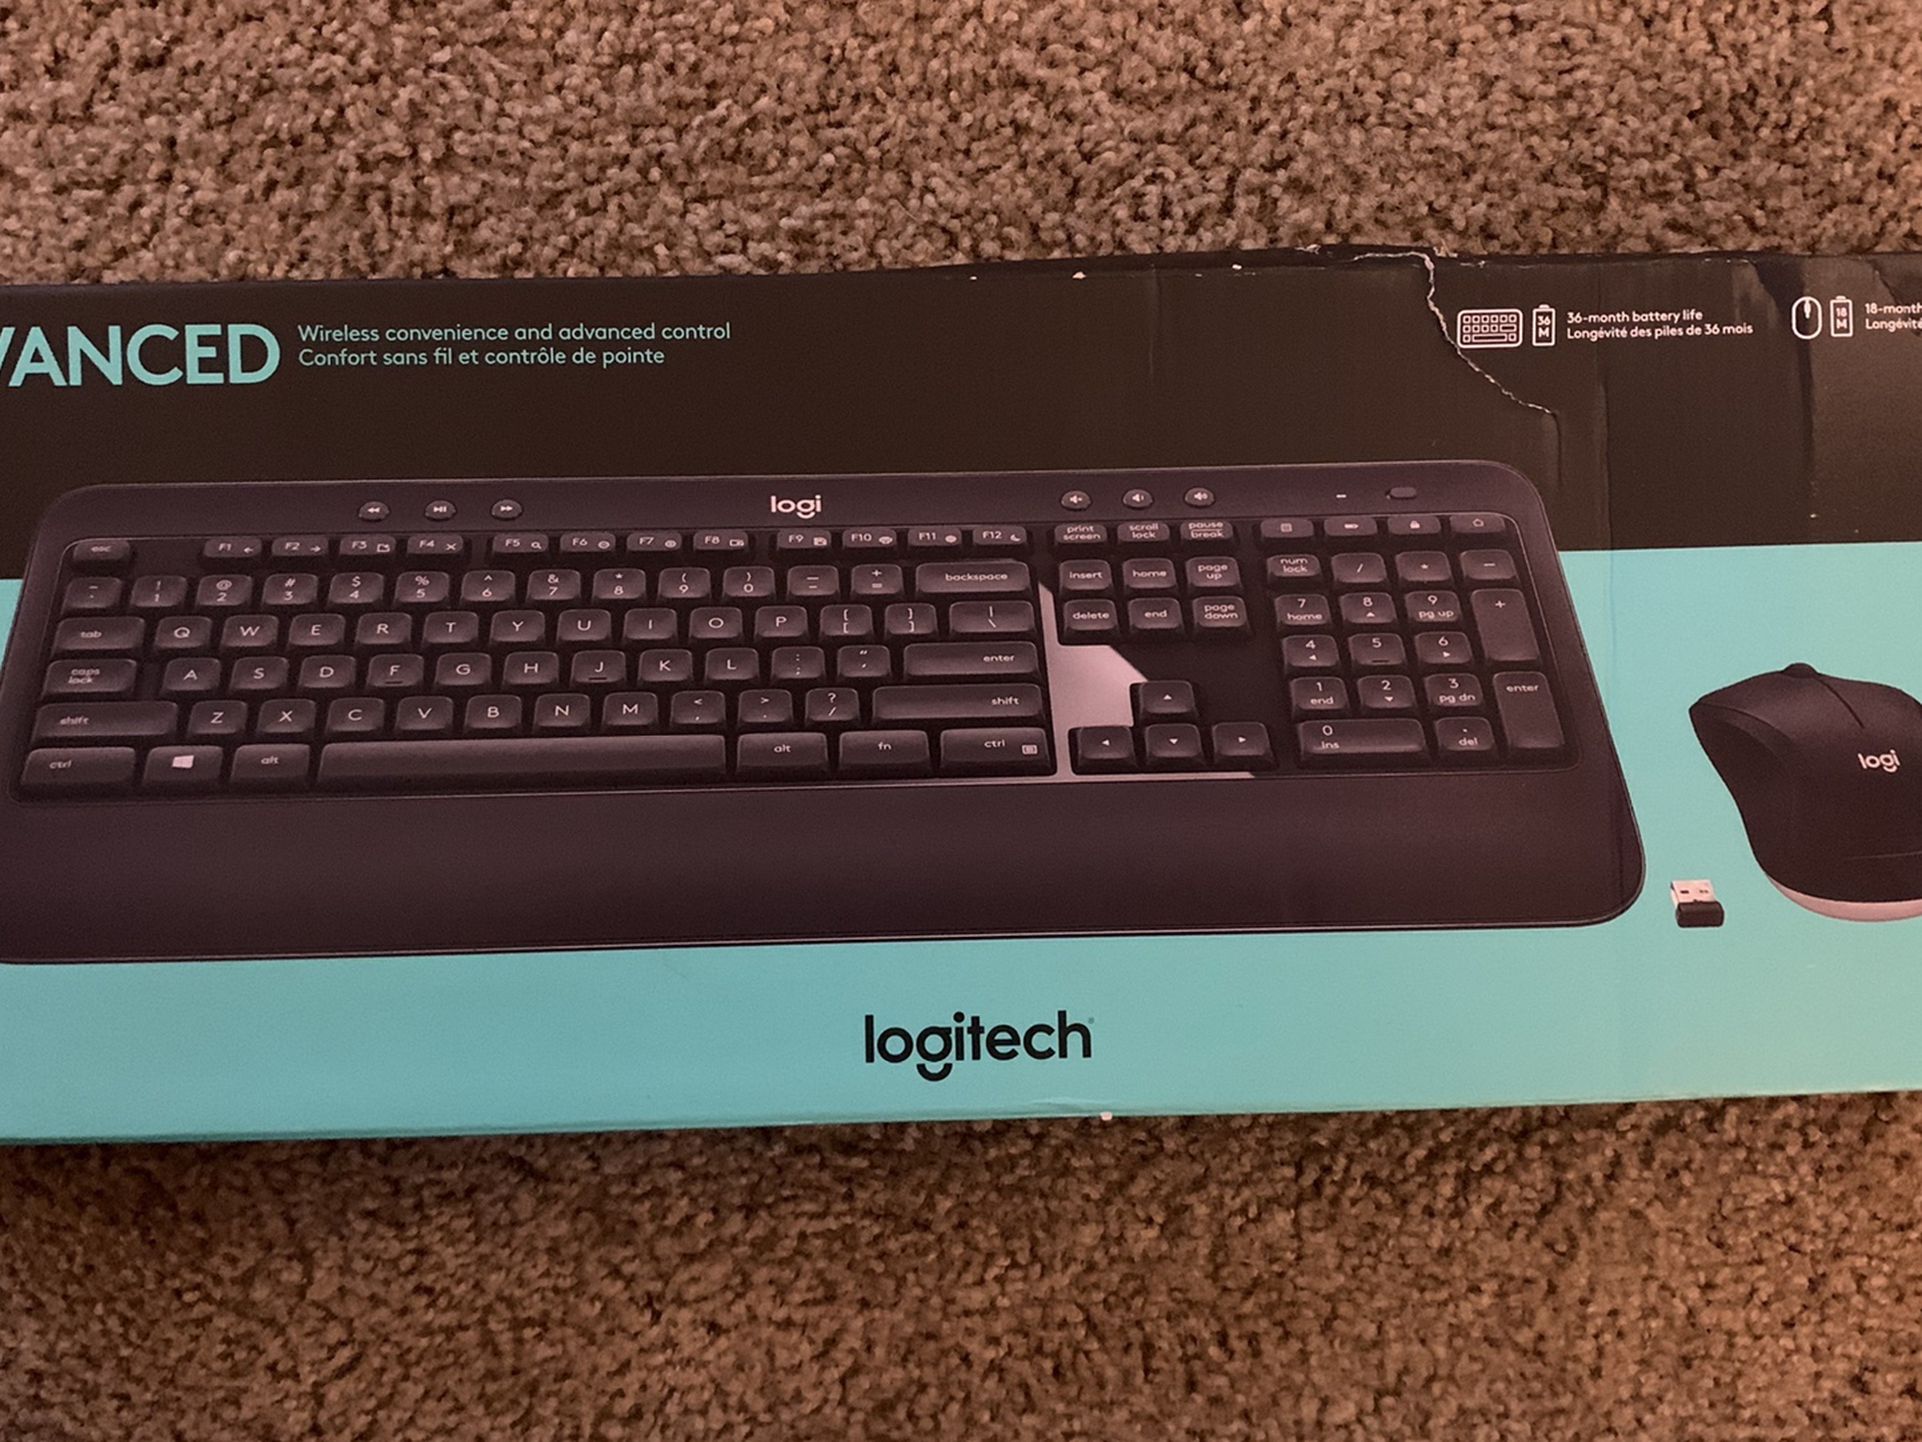 Logitech Wireless Keyboard & Mouse Combo Advanced MO540 - Brand New Sealed - Damaged Box